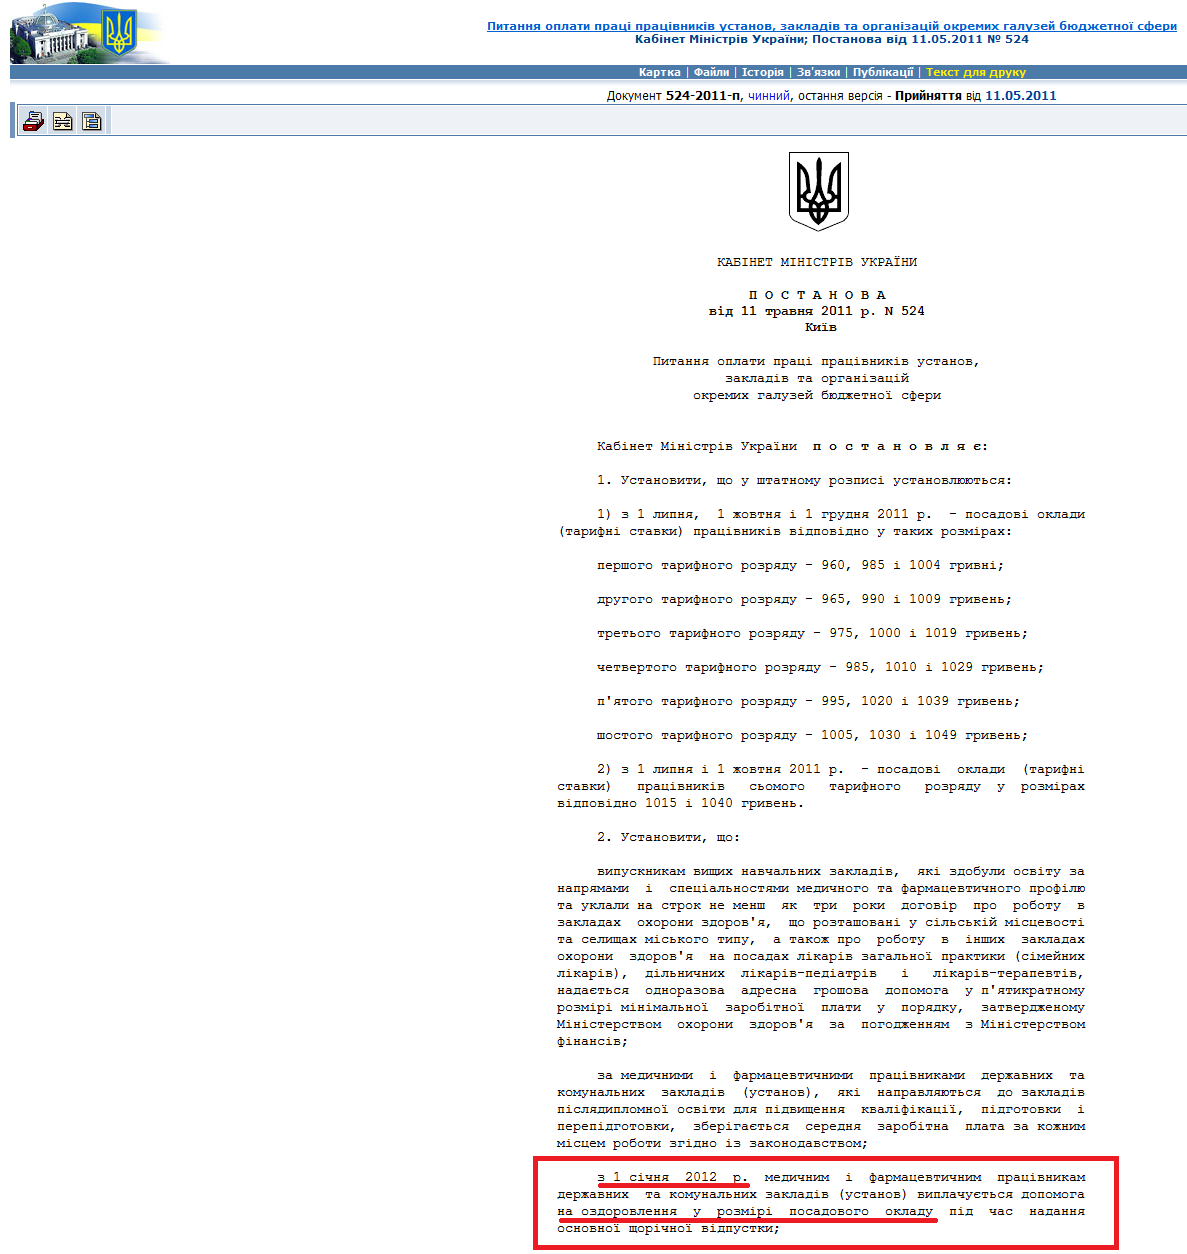 http://zakon2.rada.gov.ua/laws/show/524-2011-%D0%BF